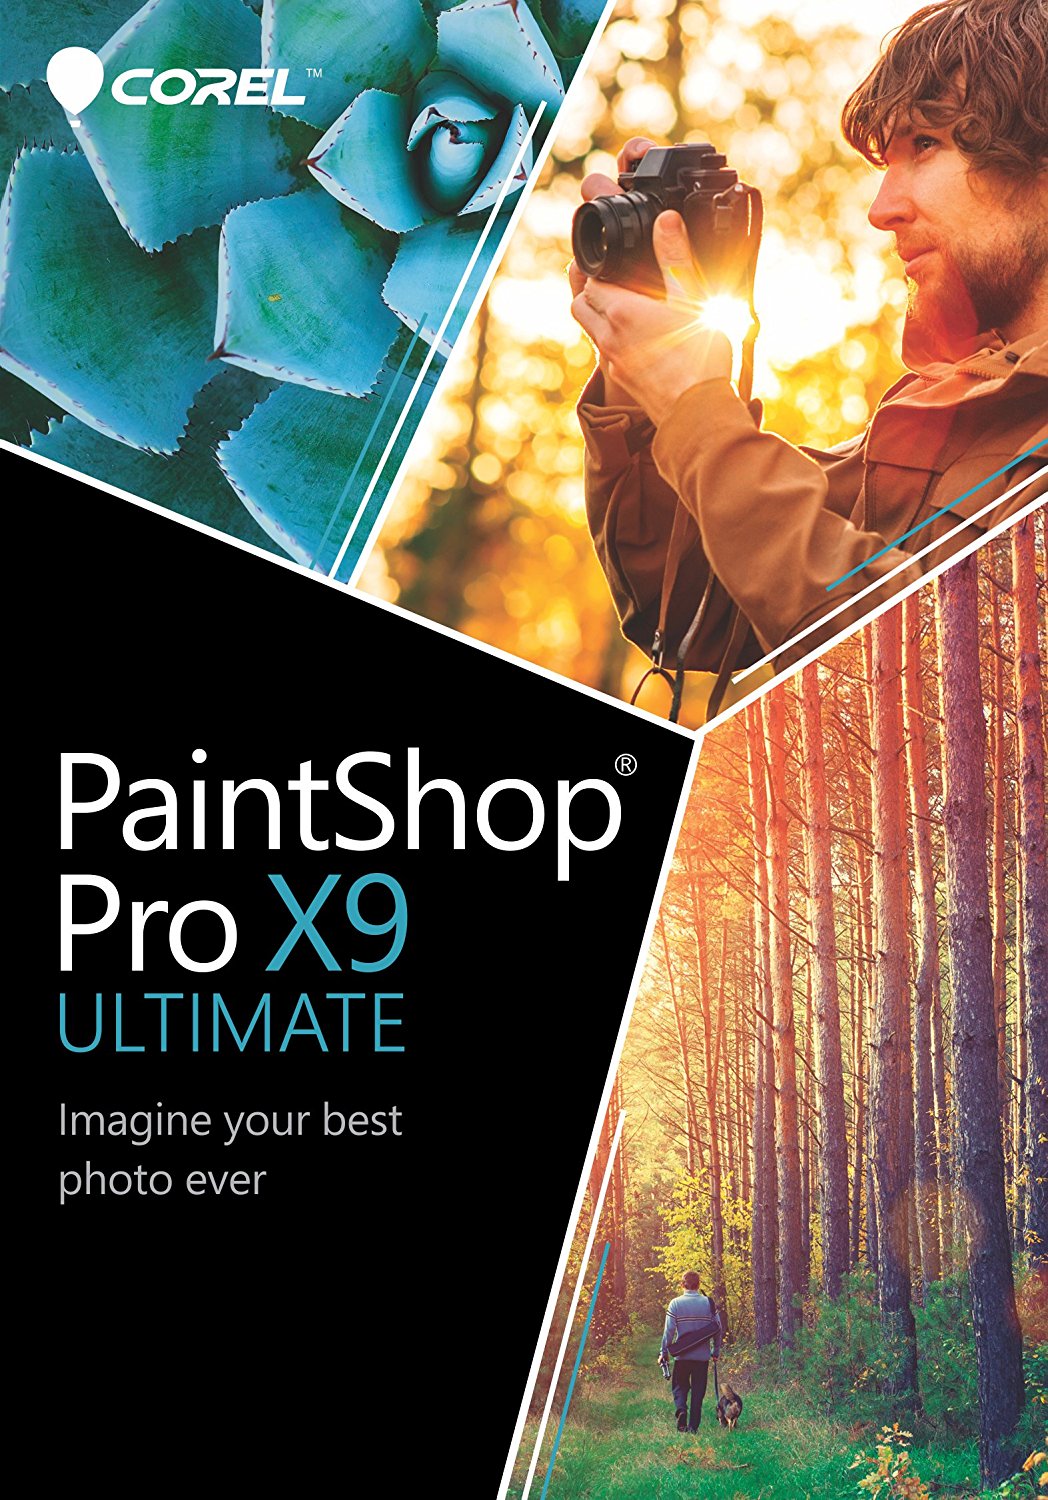 Corel PaintShop Pro X9 Ultimate 19.2.0.7 (2017) PC